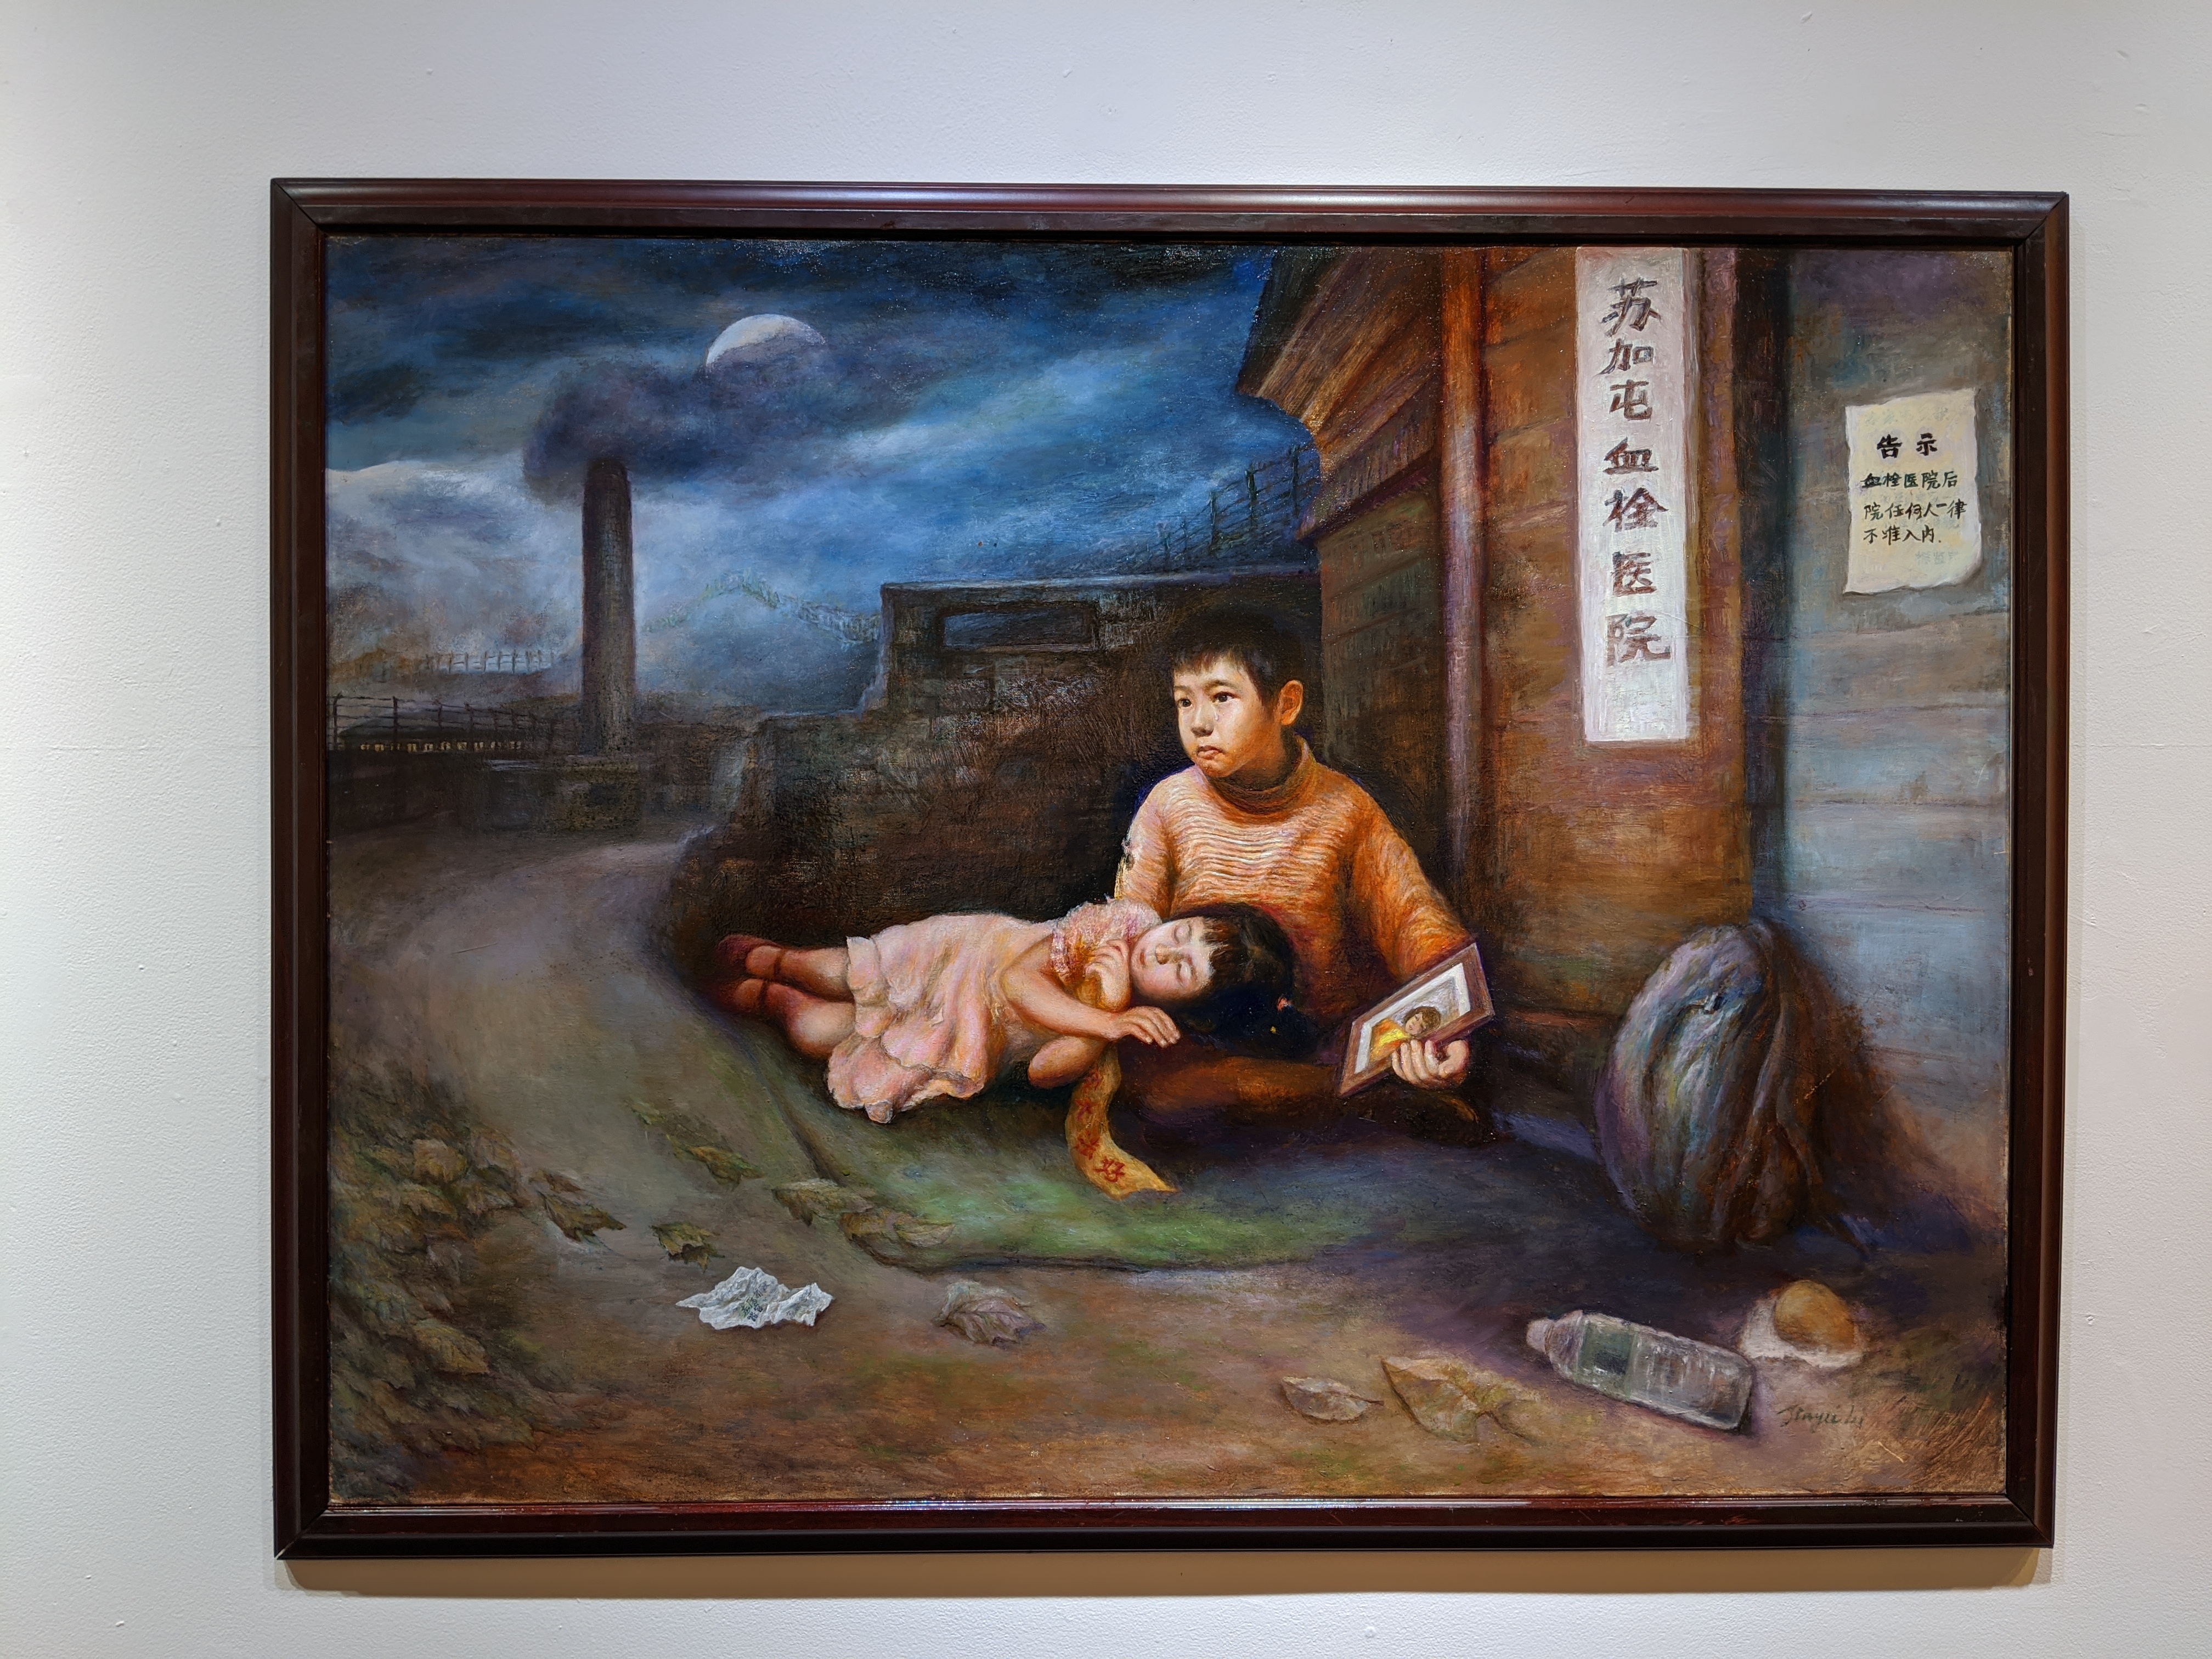 华裔画家四作品入围皇后区艺术委员会年展| 画展| 大纪元